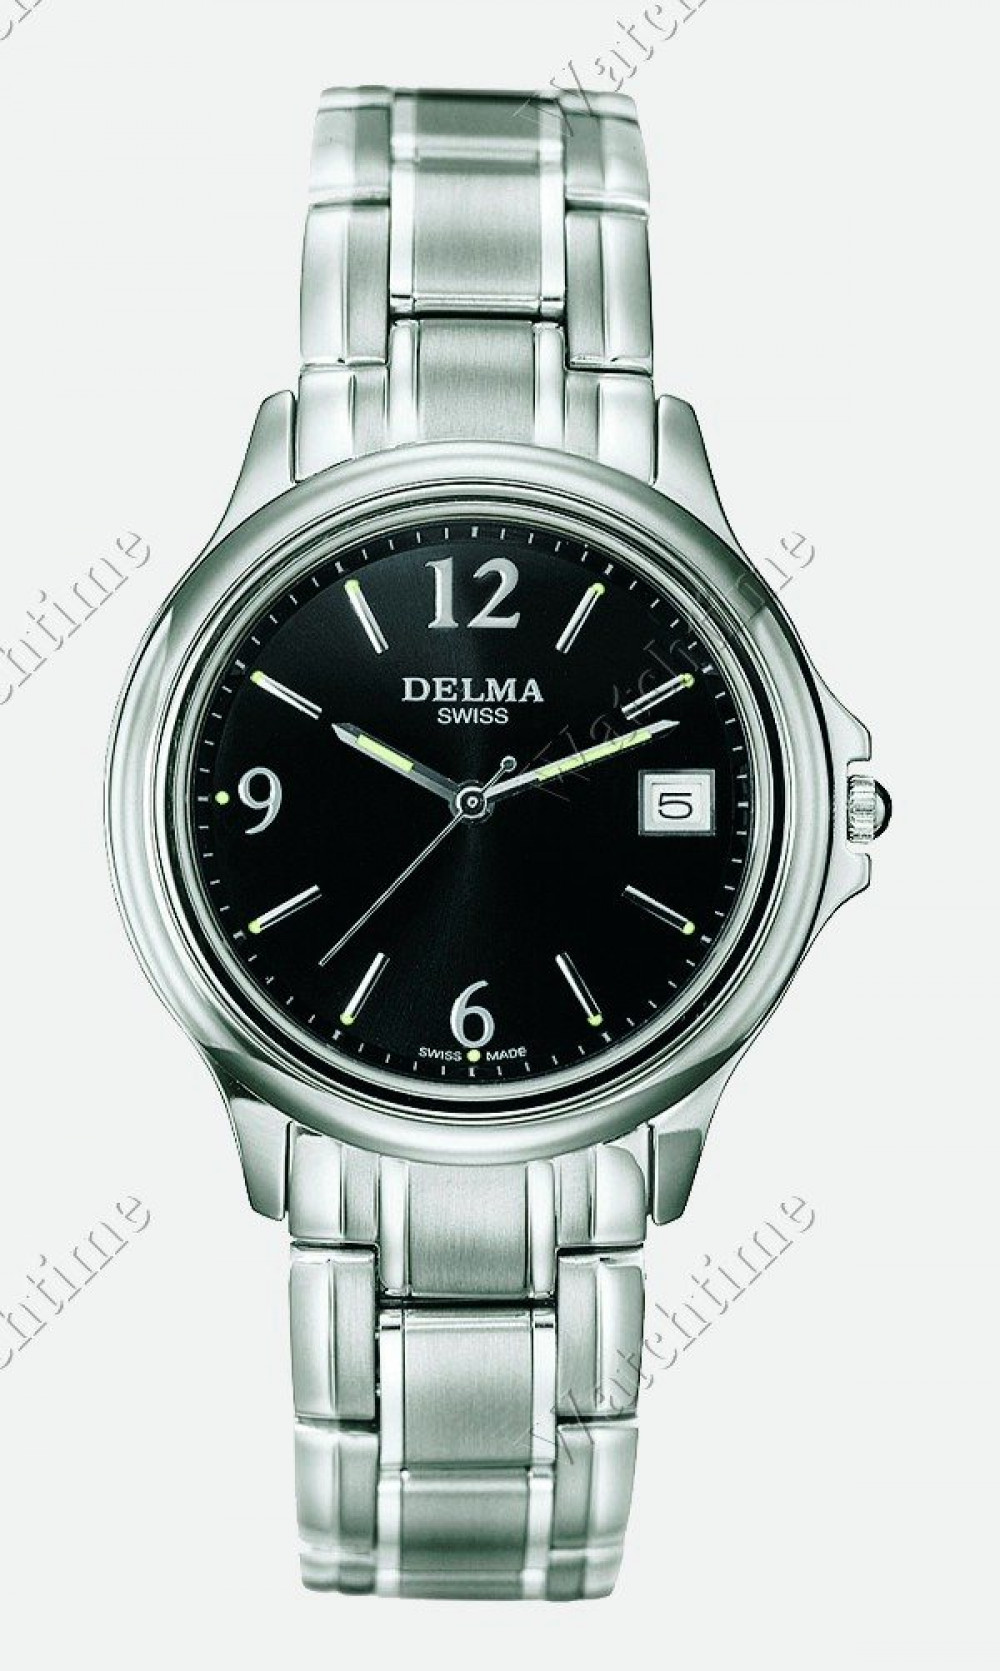 Zegarek firmy Delma, model Le Mans